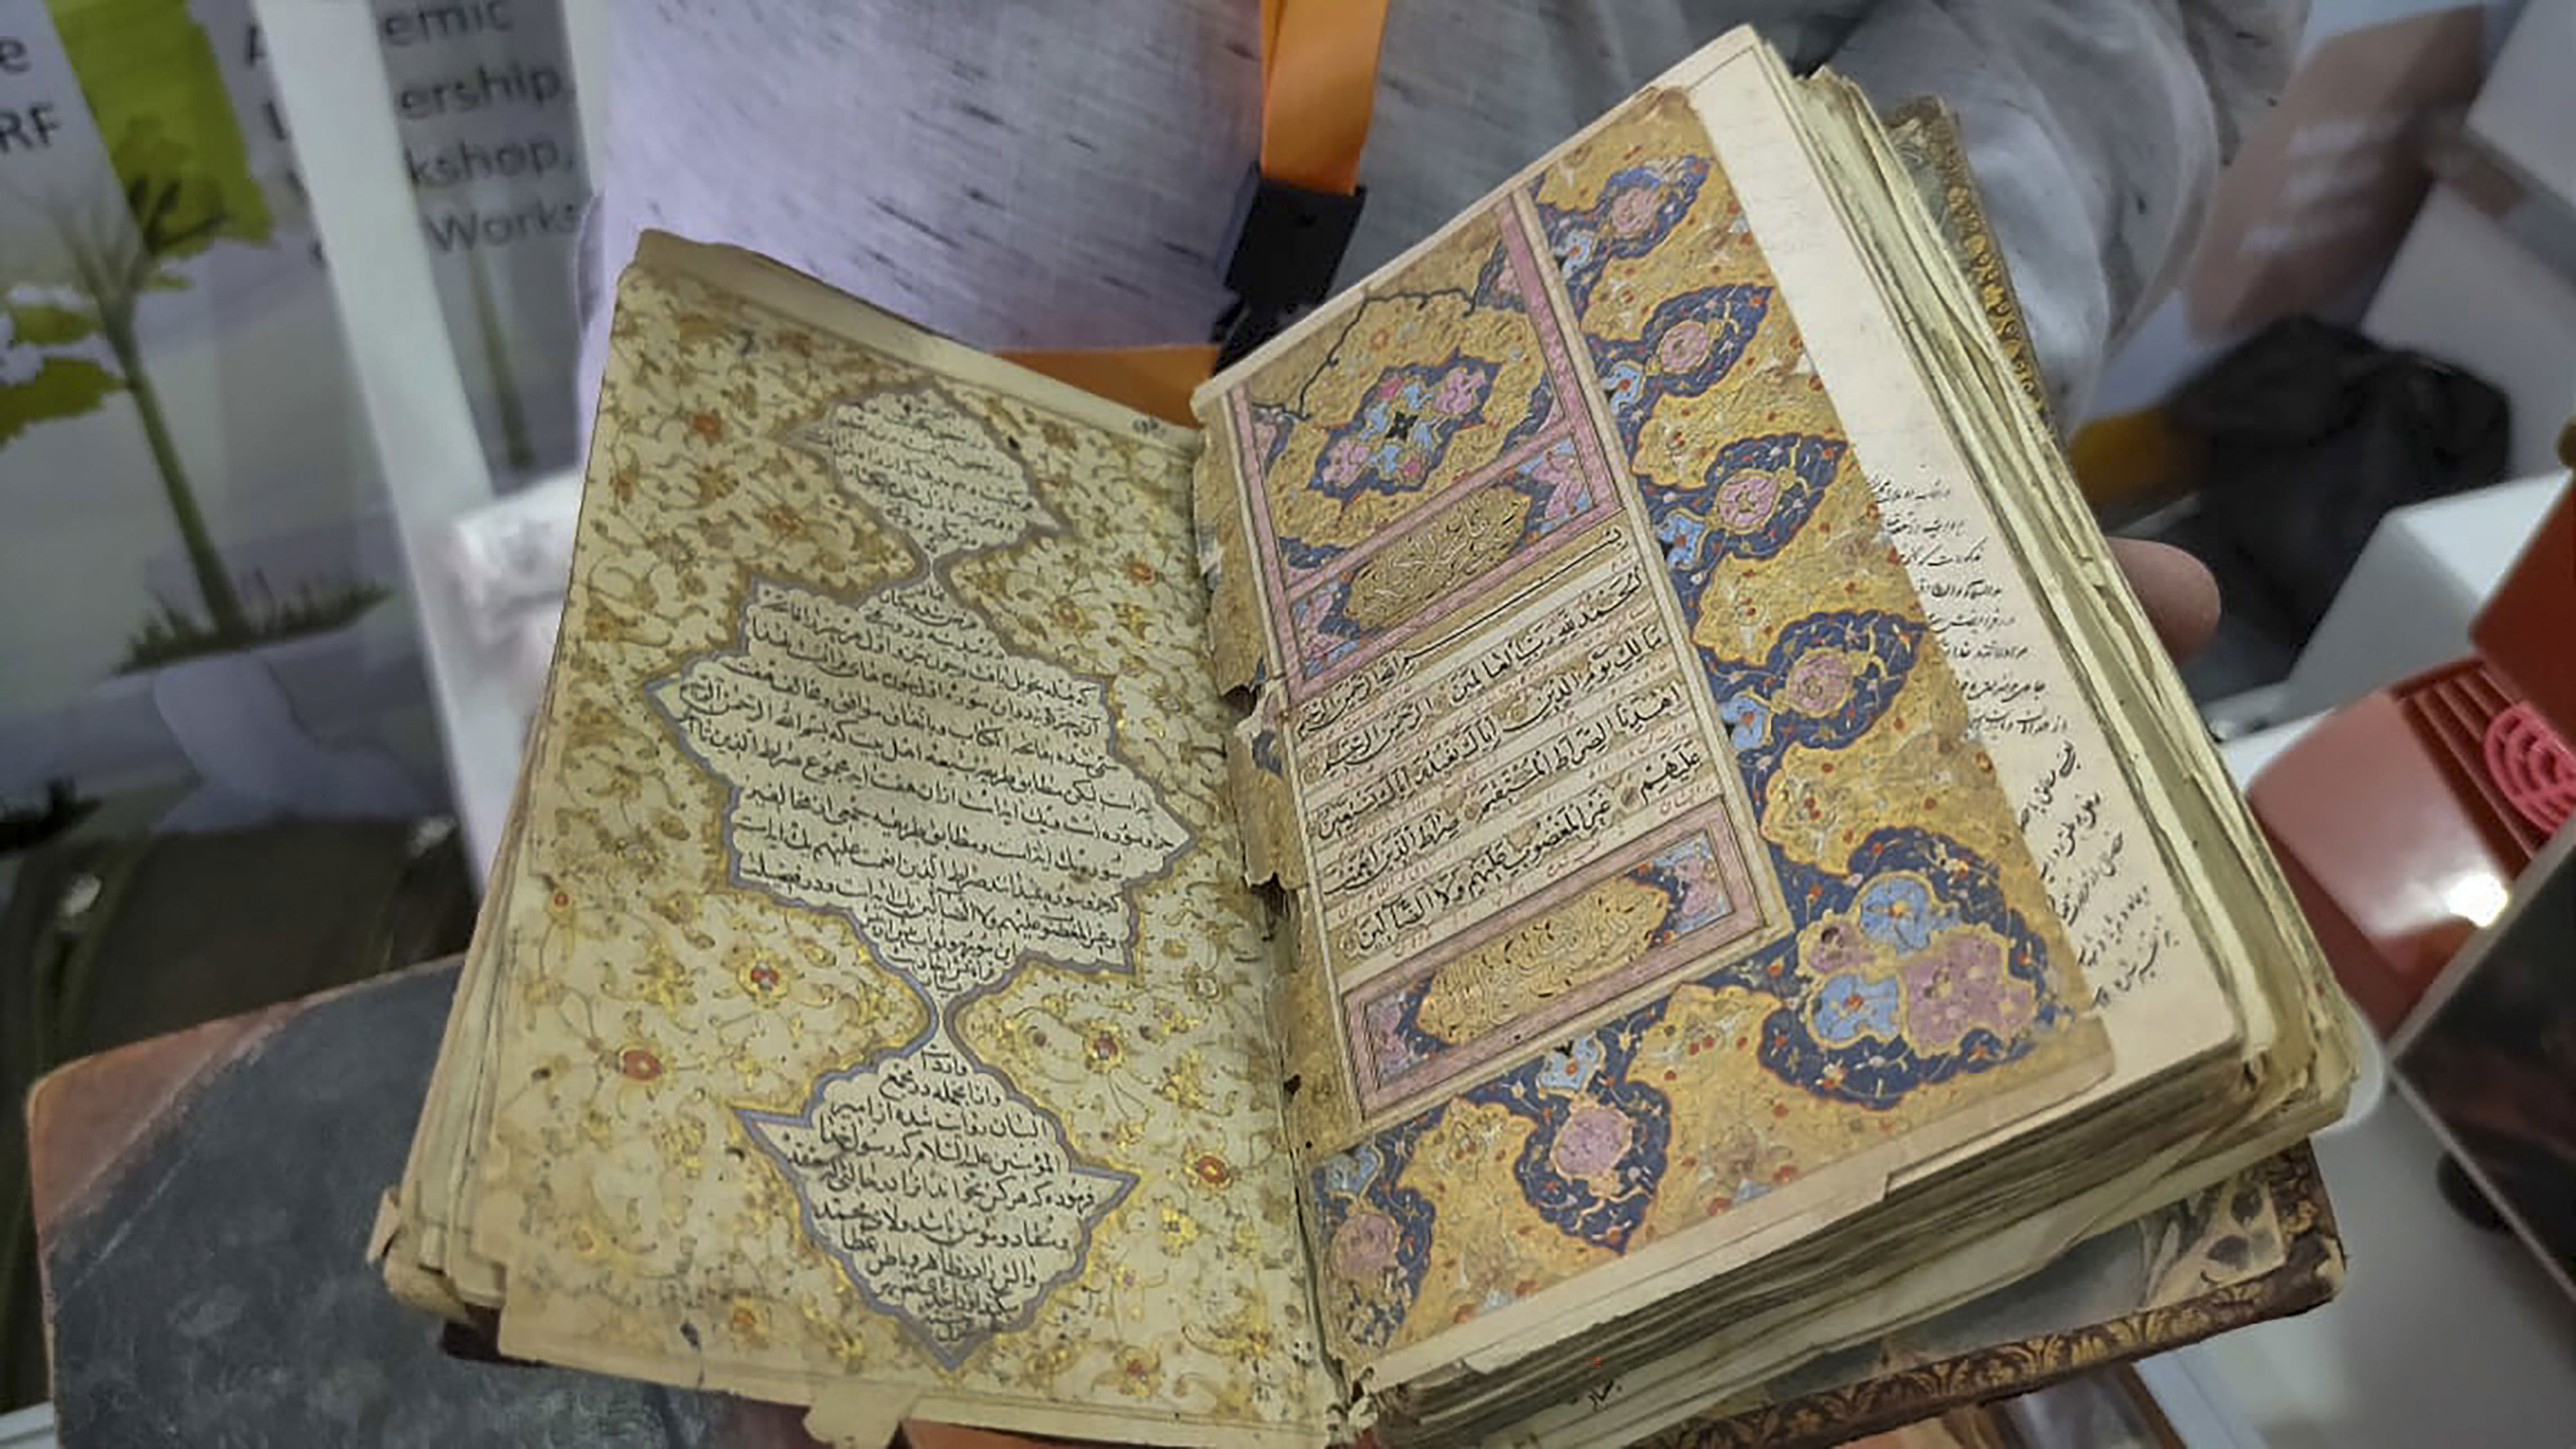 سونے کی سیاہی والا قرآن، قدیم نسخے آر ایس ایس سے متاثر ادارے نے انڈین سائنس کانگریس میں نمائش کے لیے رکھے